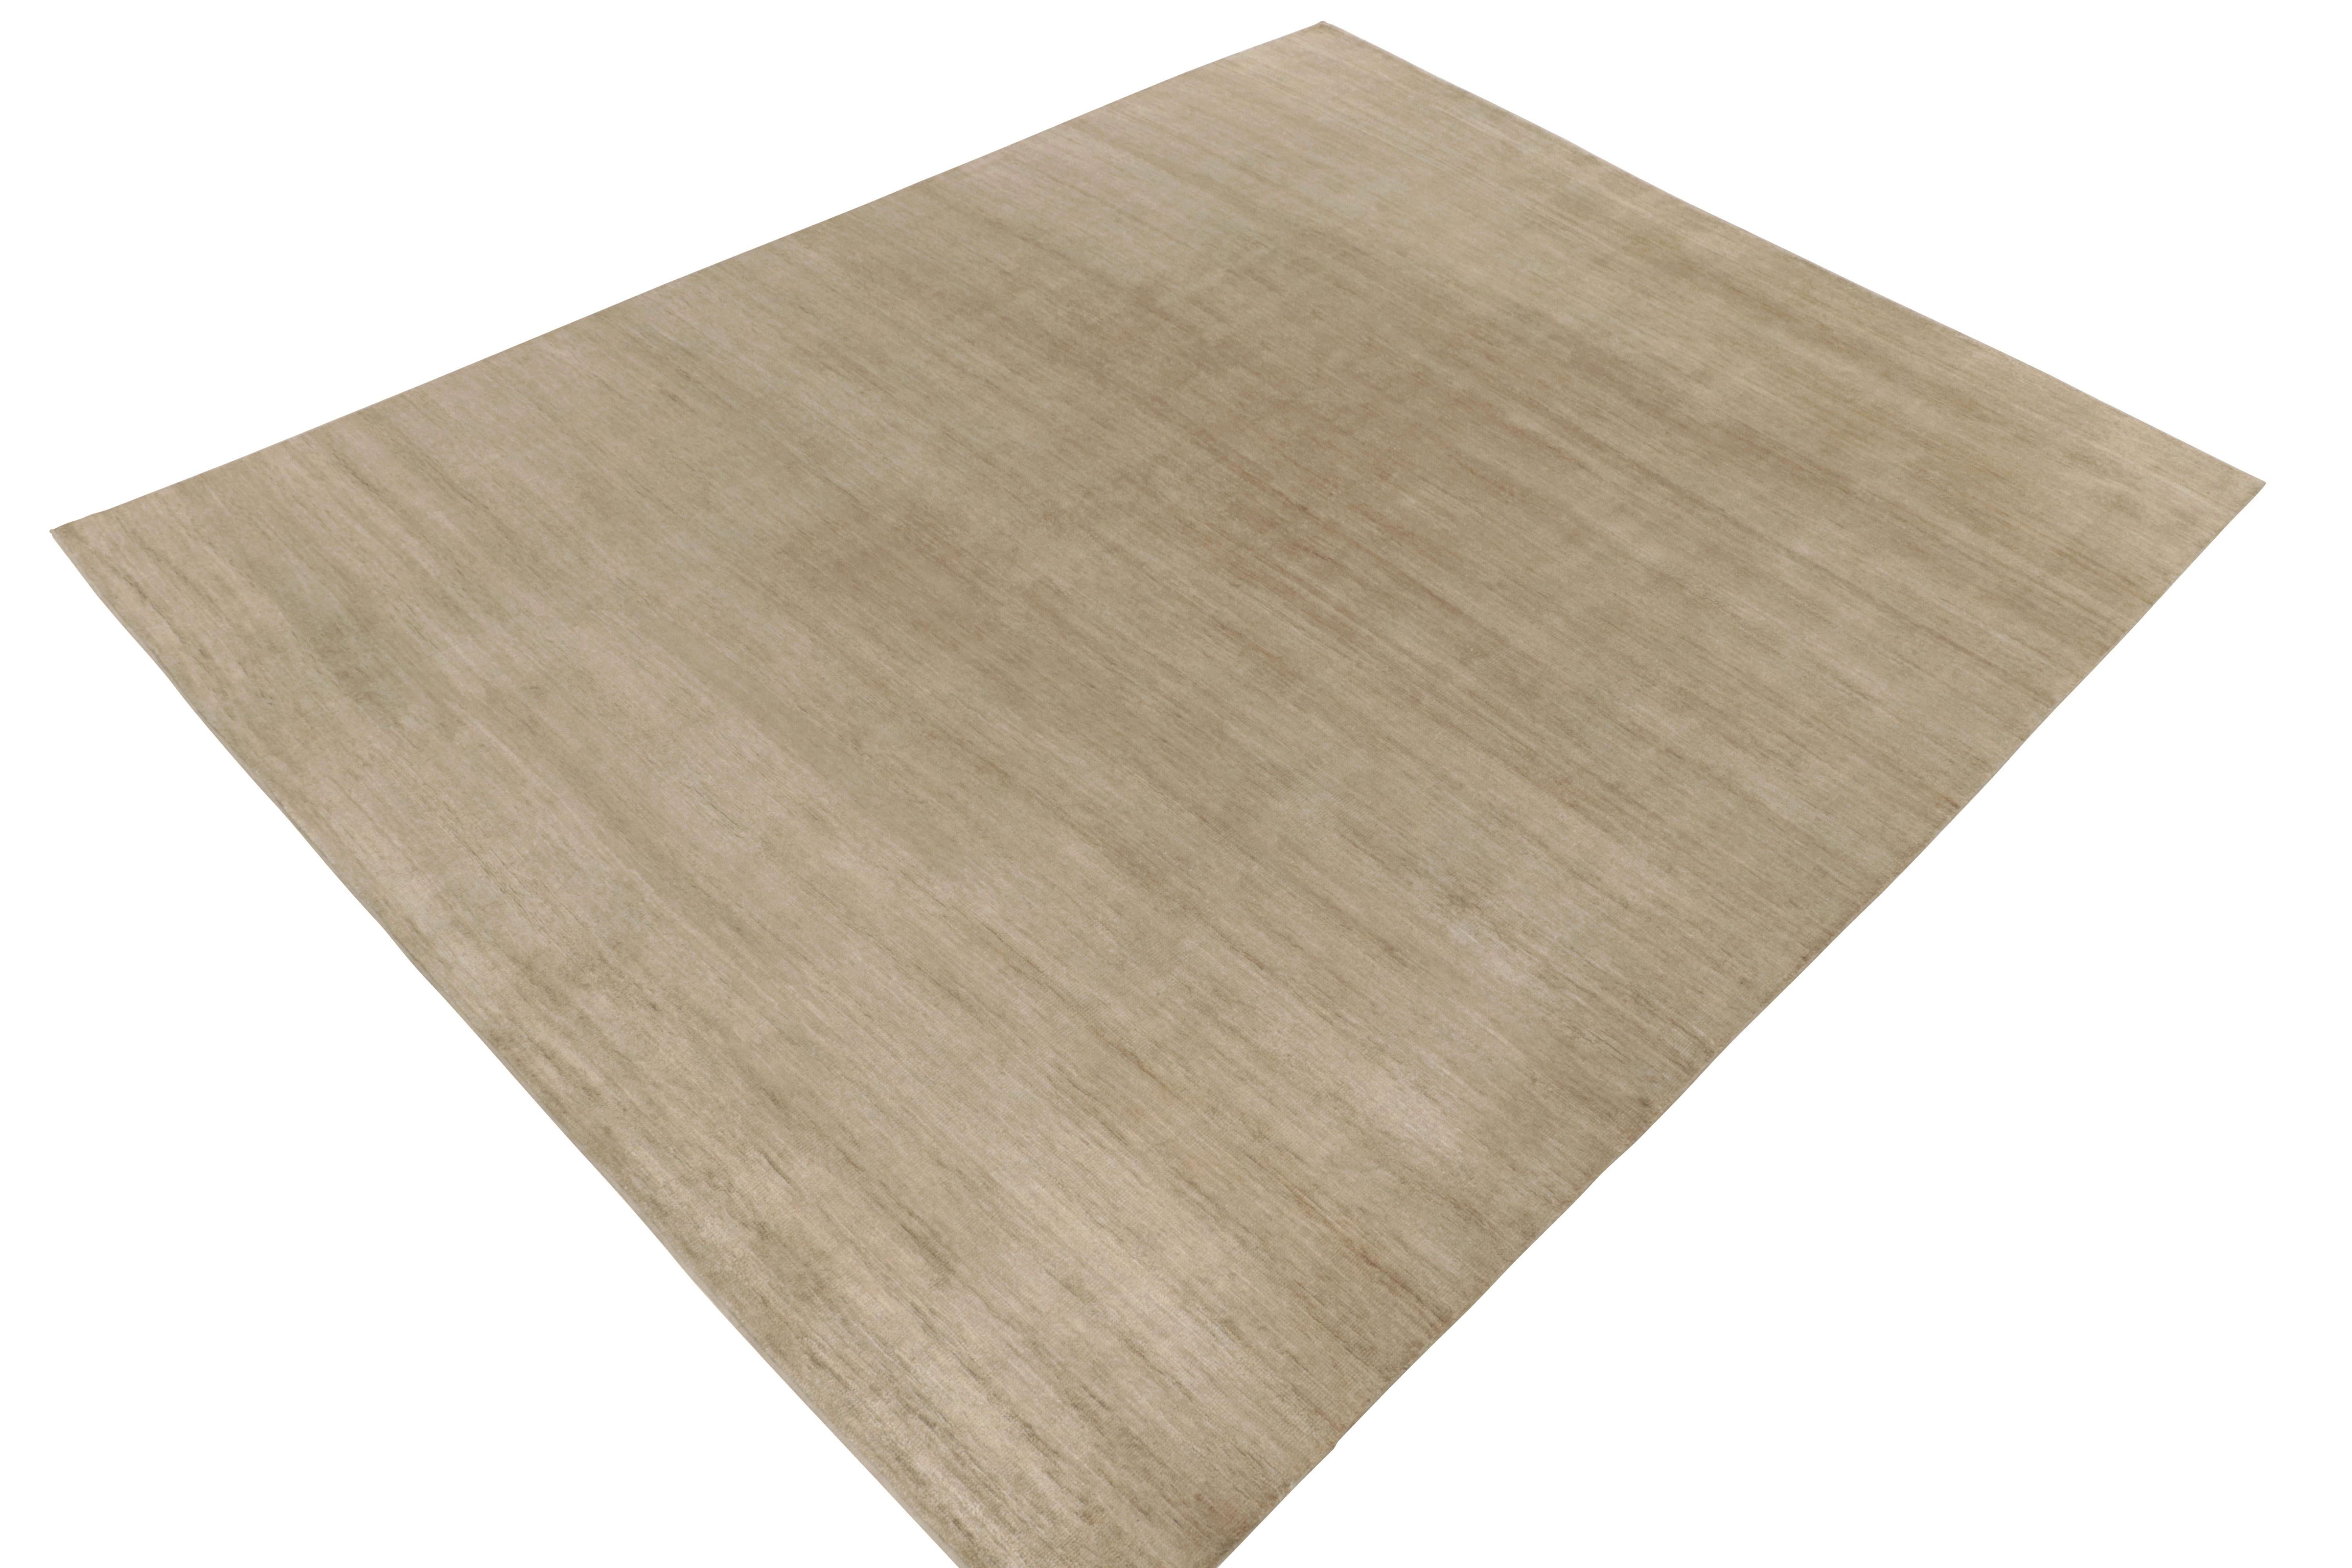 Un tapis 11x14 de la collection moderne Texture of Color de Rug & Kilim. Ce tapis a une personnalité réfléchie dans des tons beige-marron unis, avec un mélange complexe de fils pour une interprétation polyvalente des rayures. Nouée à la main en